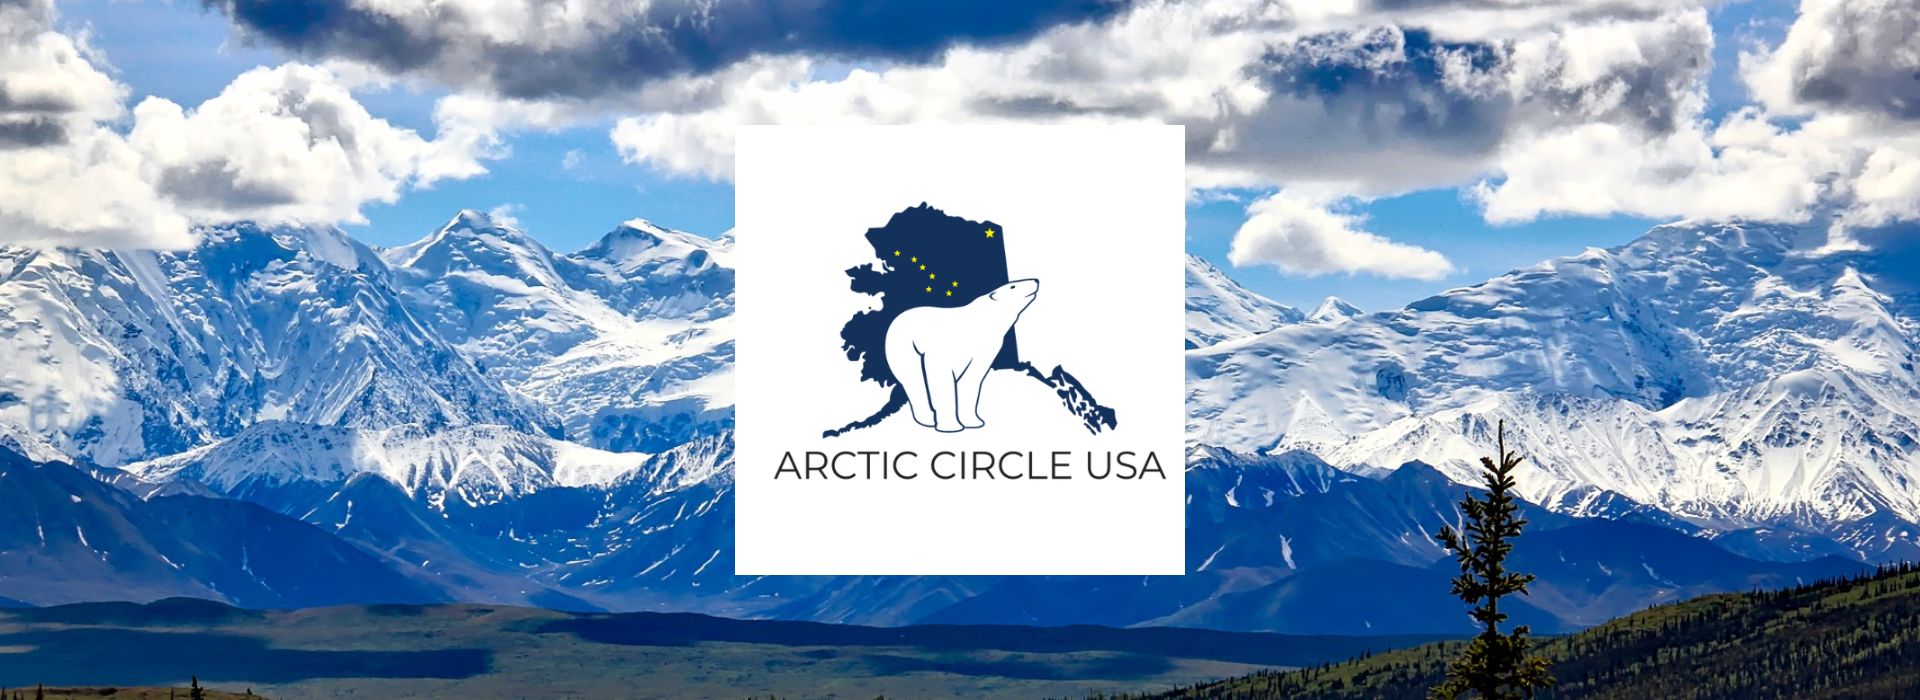 Alaska Gift Shop - Arctic Circle USA